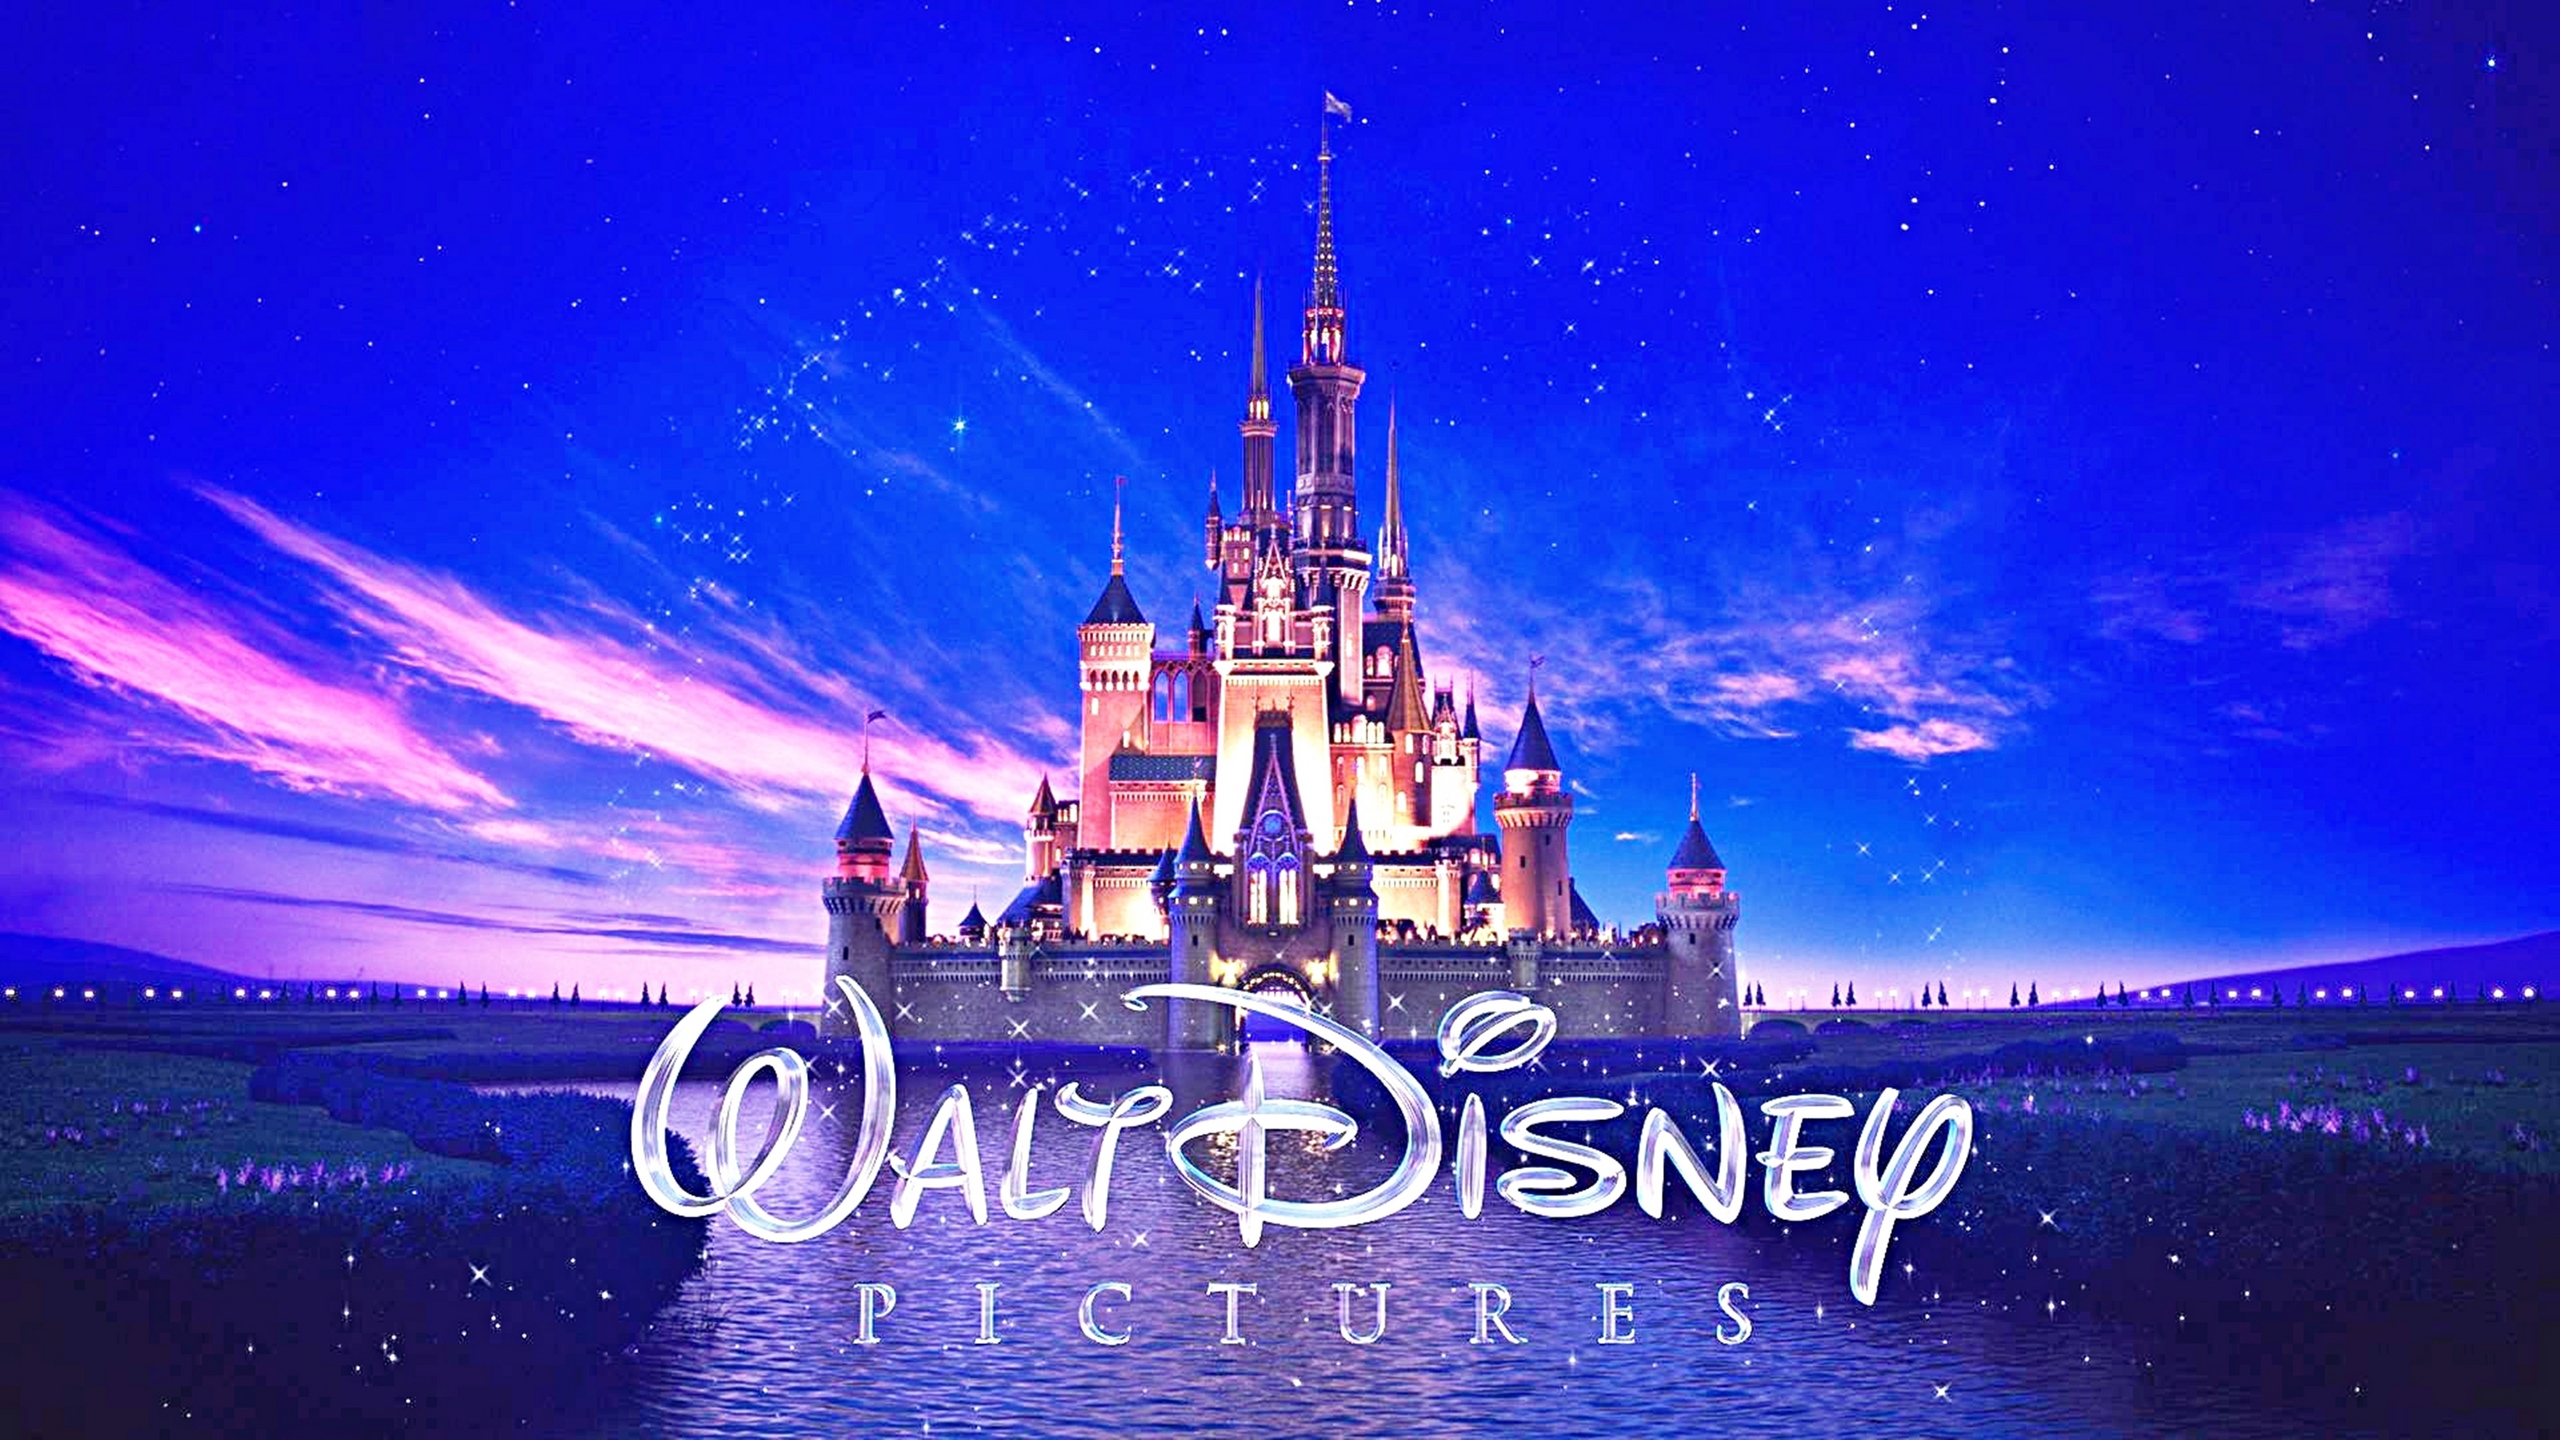 Disney Castle Photos Download The BEST Free Disney Castle Stock Photos   HD Images